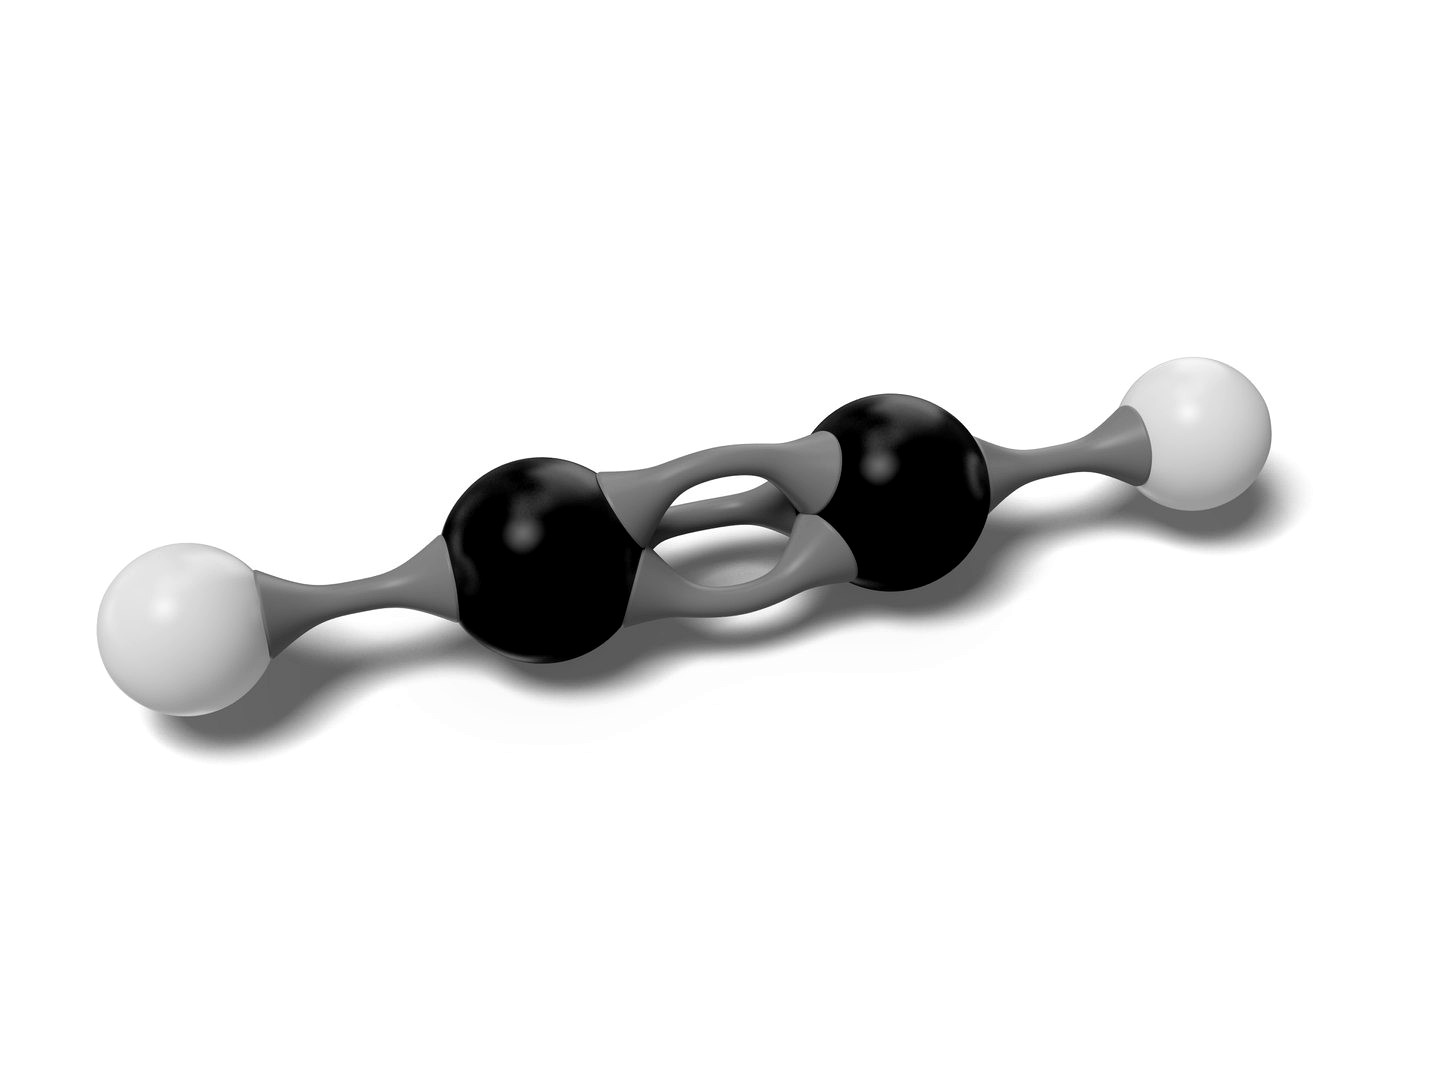 Acetylene Molecular model C2H2